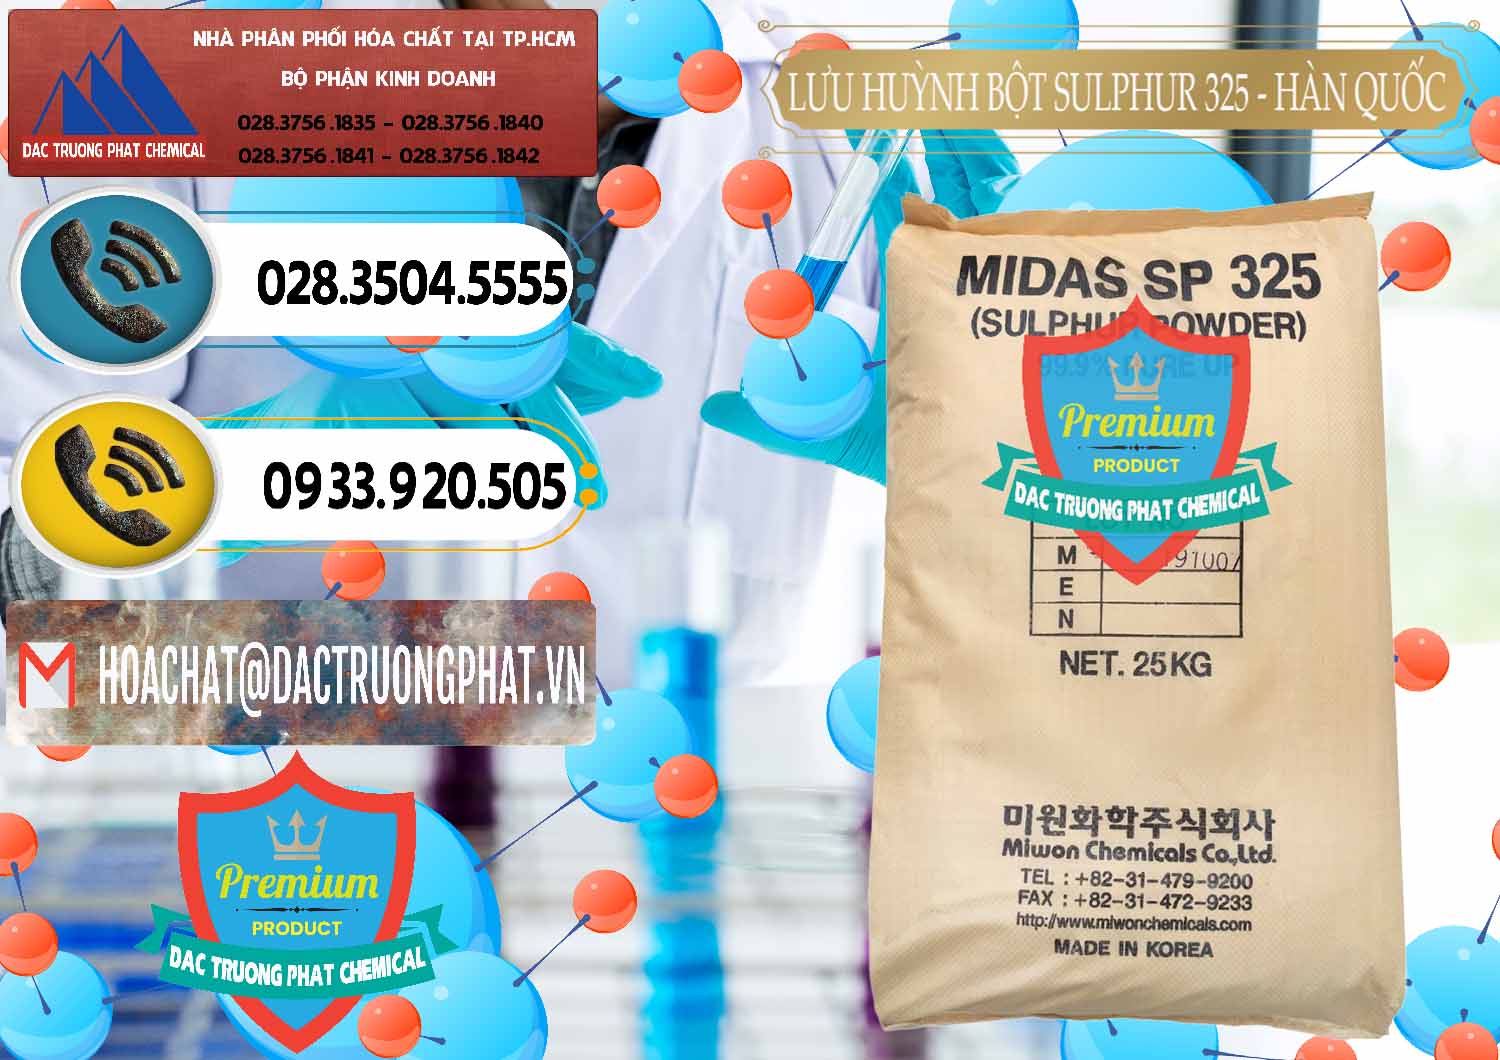 Công ty chuyên bán ( cung cấp ) Lưu huỳnh Bột - Sulfur Powder Midas SP 325 Hàn Quốc Korea - 0198 - Cty chuyên nhập khẩu _ phân phối hóa chất tại TP.HCM - hoachatdetnhuom.vn